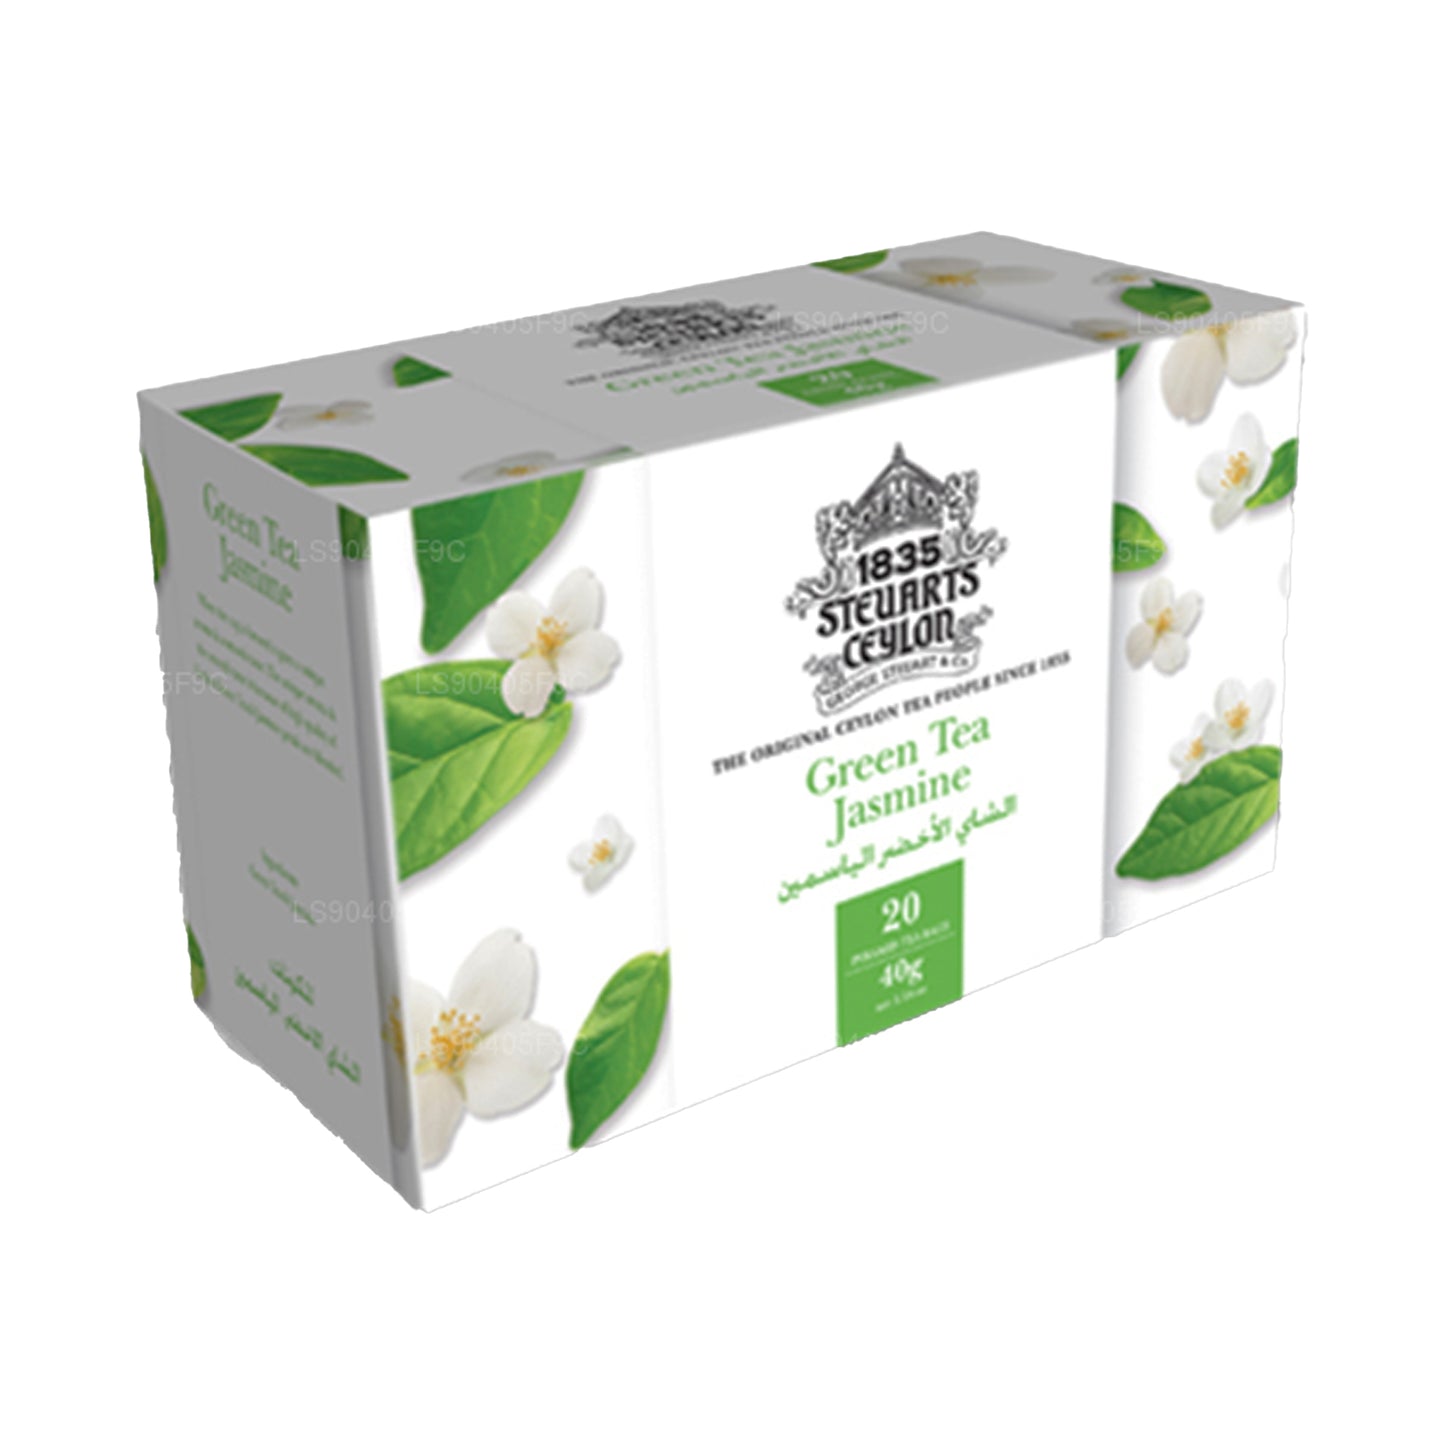 George Steuart Green Tea Jasmine (40g) 20 Tea Bags